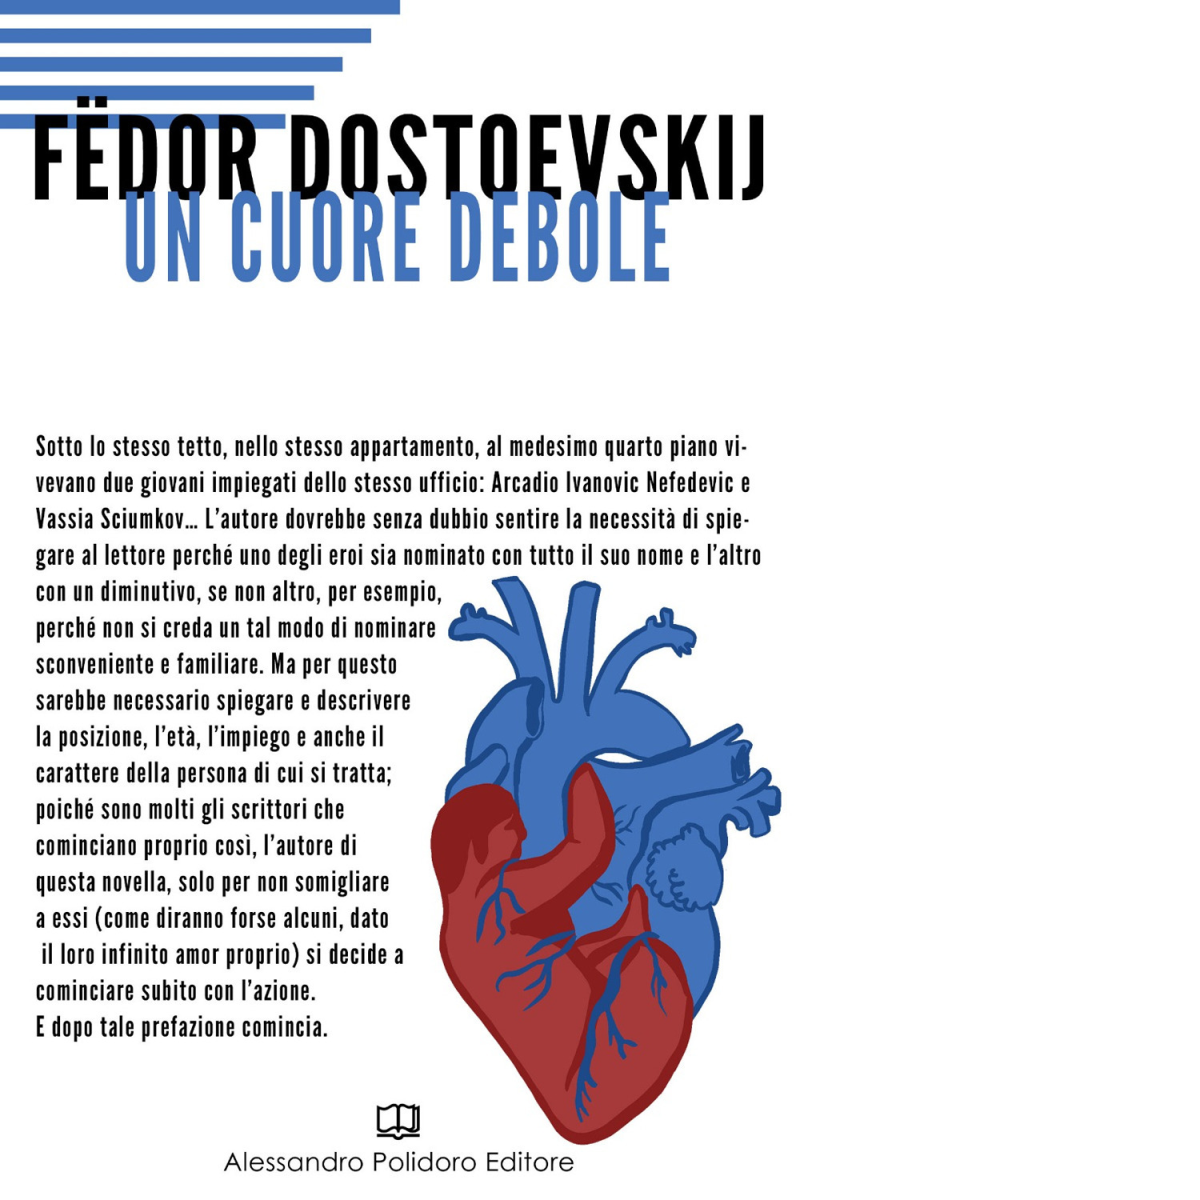 Un cuore debole di F?dor Dostoevskij,  2020,  Alessandro Polidoro Editore